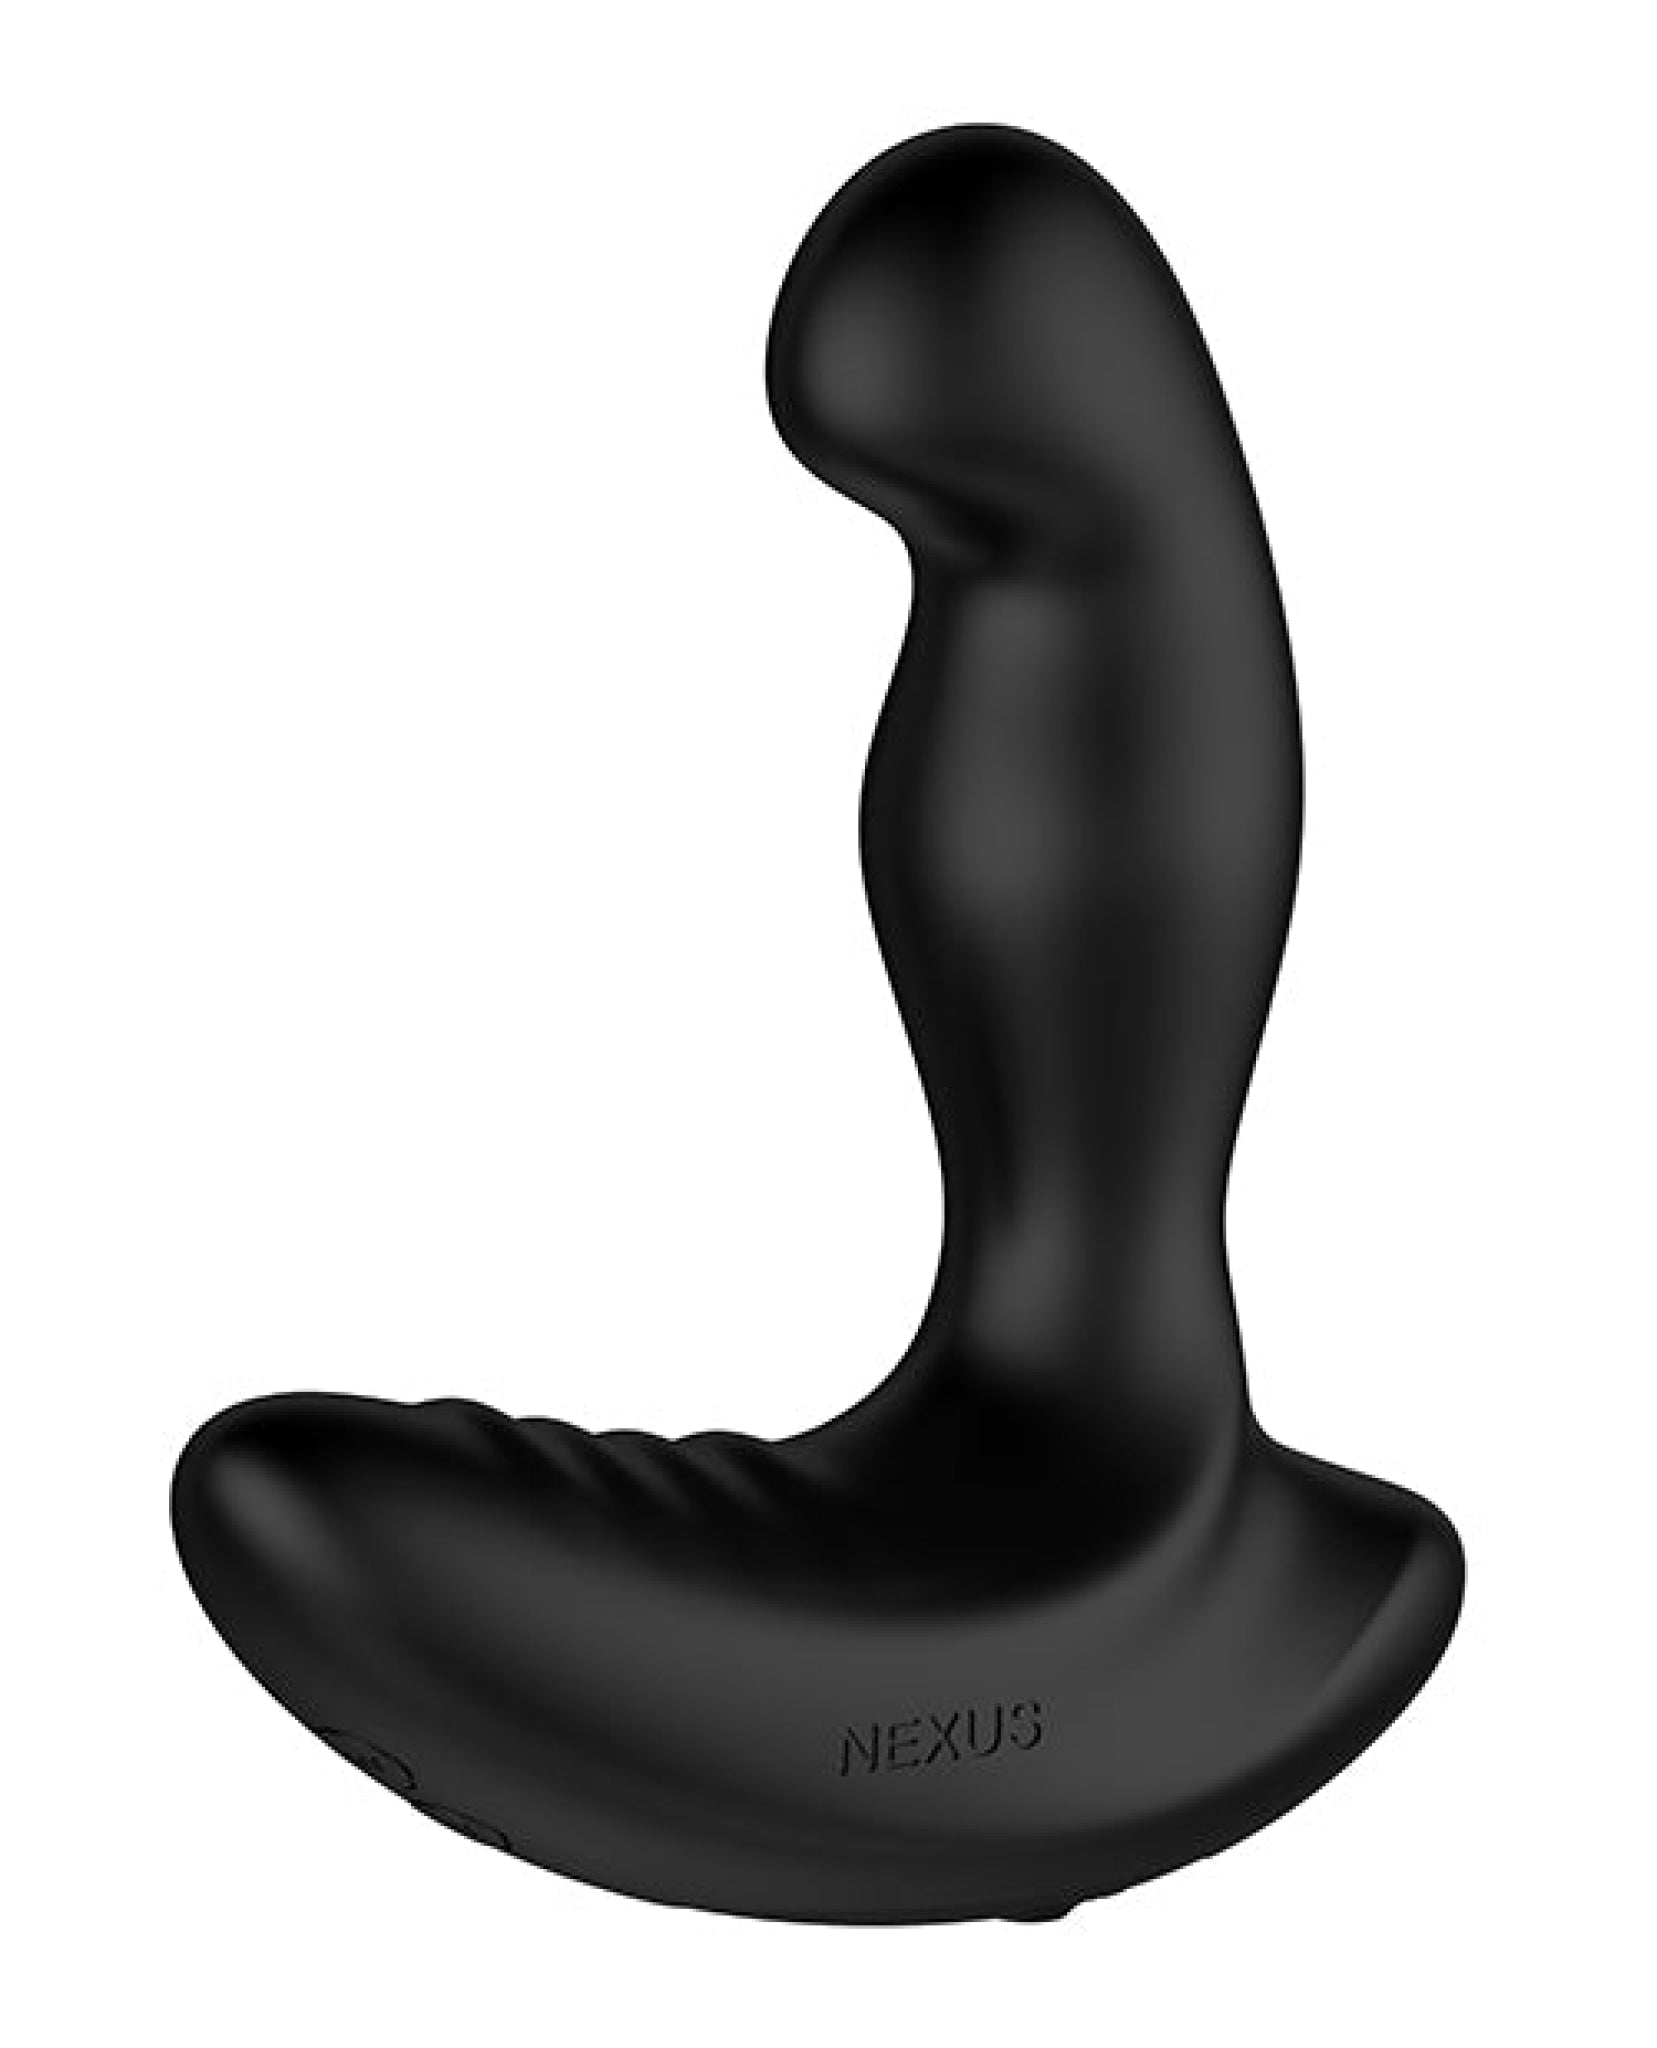 Nexus Ride Prostate Massager - Black Nexus